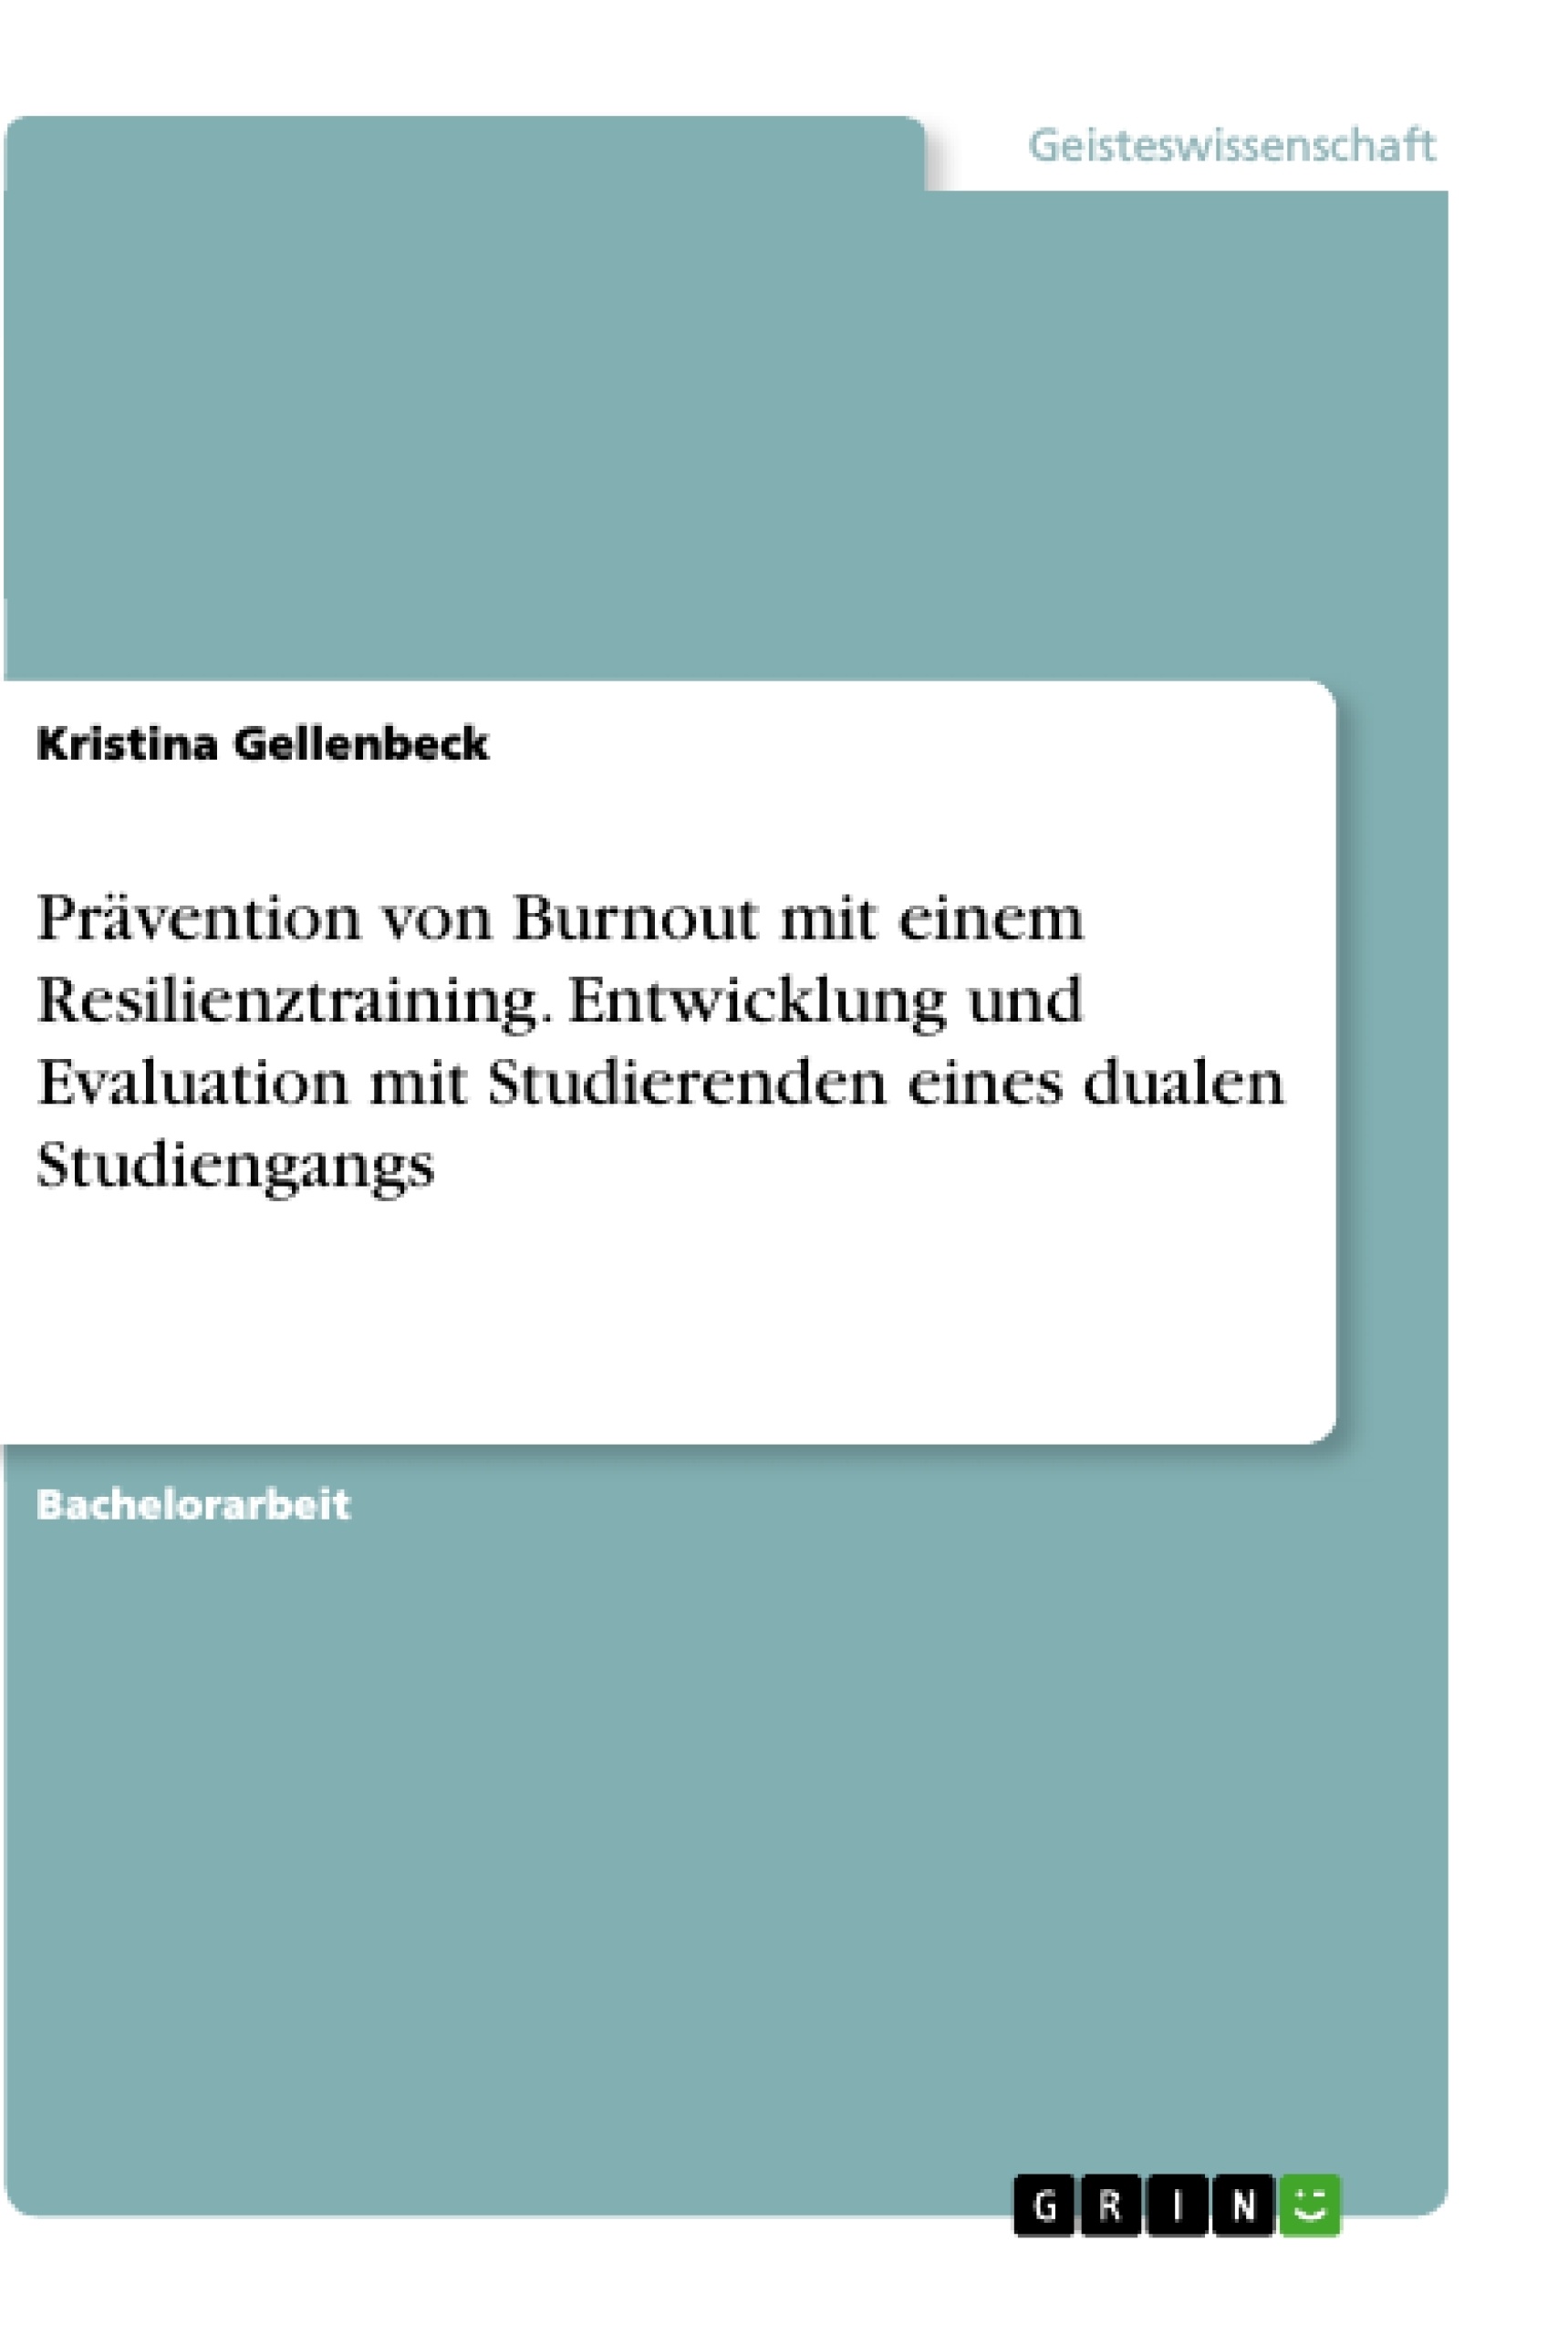 Título: Prävention von Burnout mit einem Resilienztraining. Entwicklung und Evaluation mit Studierenden eines dualen Studiengangs